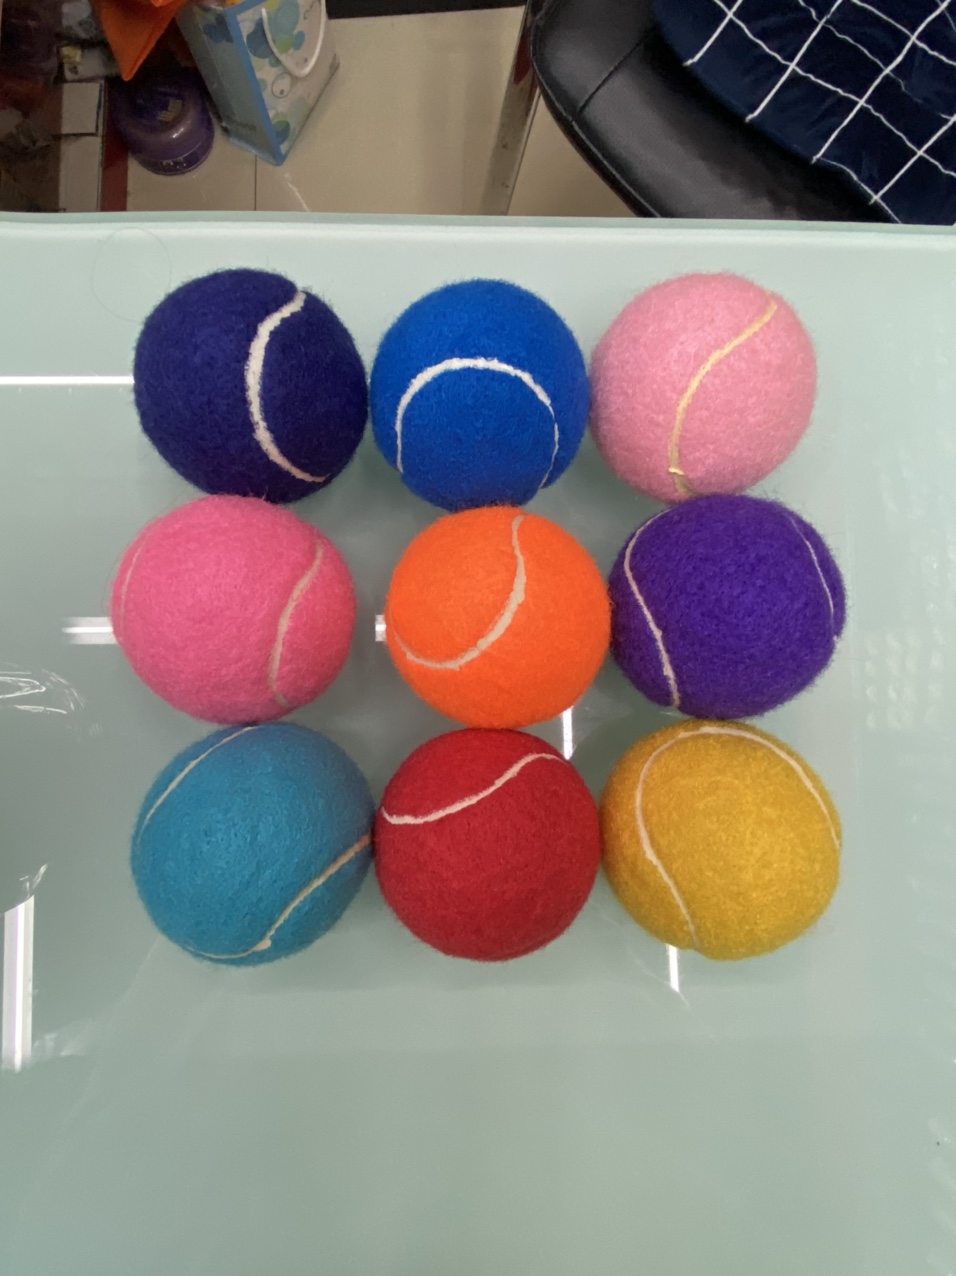 厂家生产一级彩色网球促销网球广告礼品网球可定制颜色定做logo